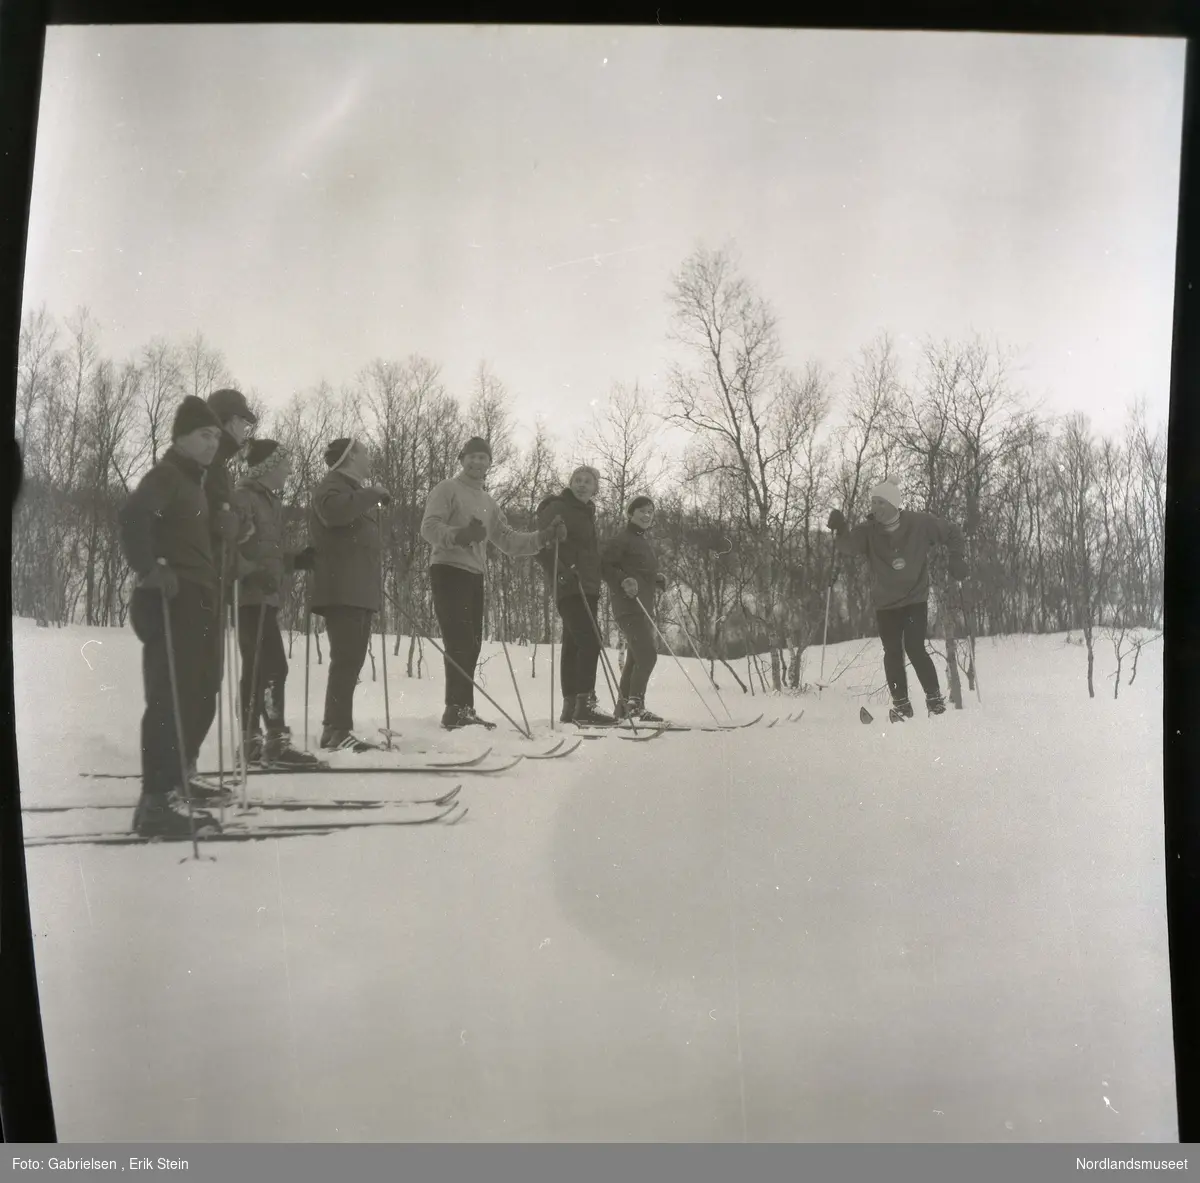 Fotografi av mange menn og kvinner med vinterklær
og ski på seg som står i snøslette vedsiden av en skog som det vokser noen trær og holder noen skistaver mens
de snakker og ler med hverandre 
og man ser et kvinnen med ski på seg 
lengst til høyre har en medalje på seg